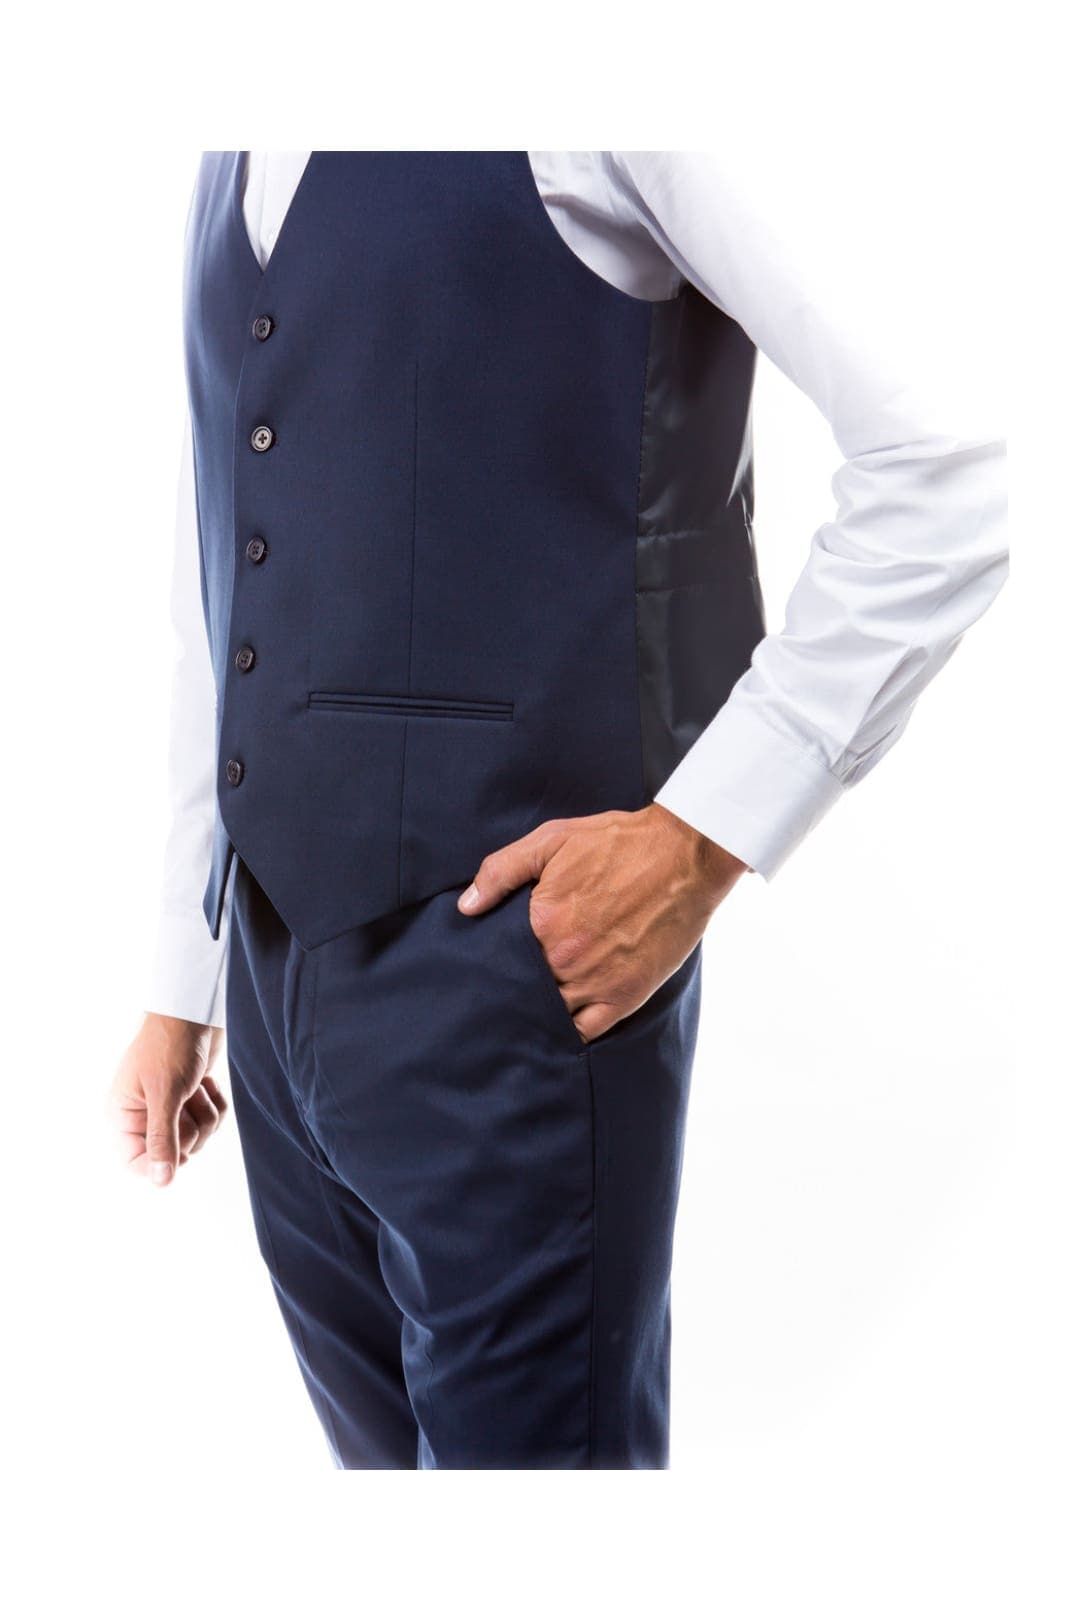 Dark Grey Zegarie Suit Separates Solid Men’s Vests For Men MV346-03 - Dark Grey / 34 / MV346-03 - Suit-separates